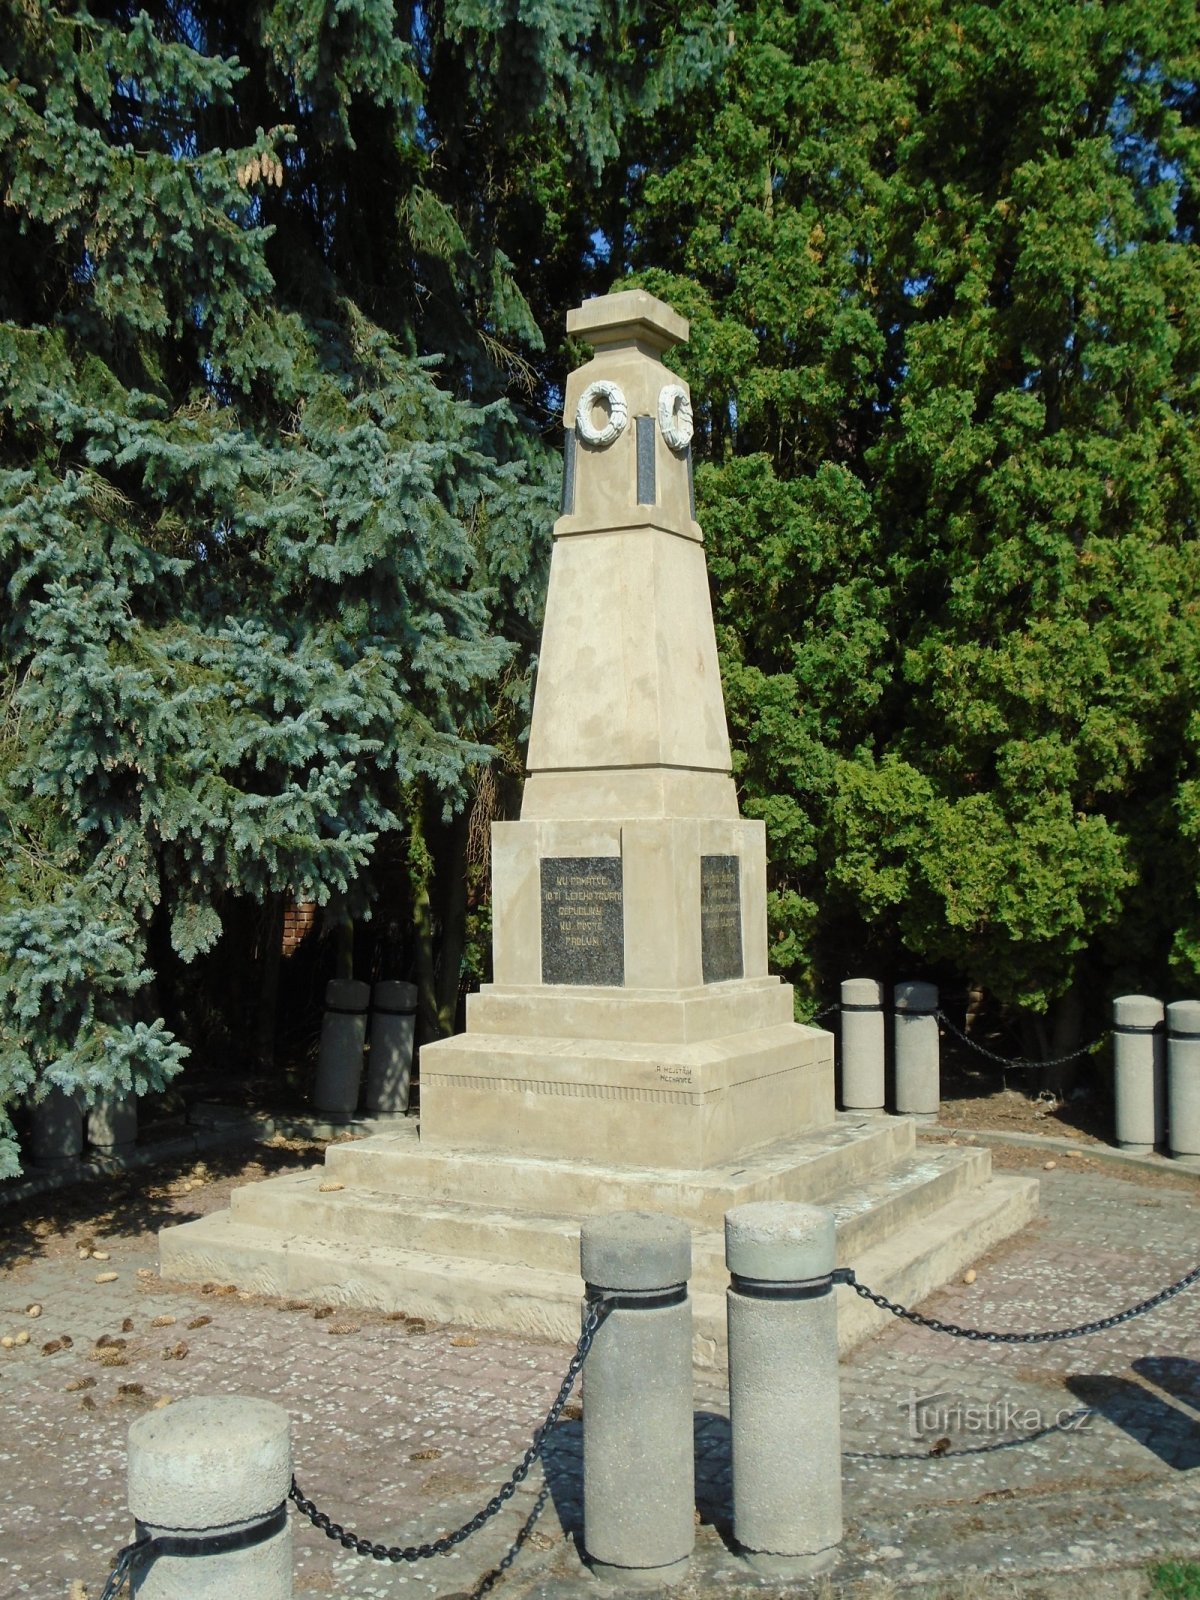 第一次世界大戦で亡くなった人々の記念碑 (Wetbeard)